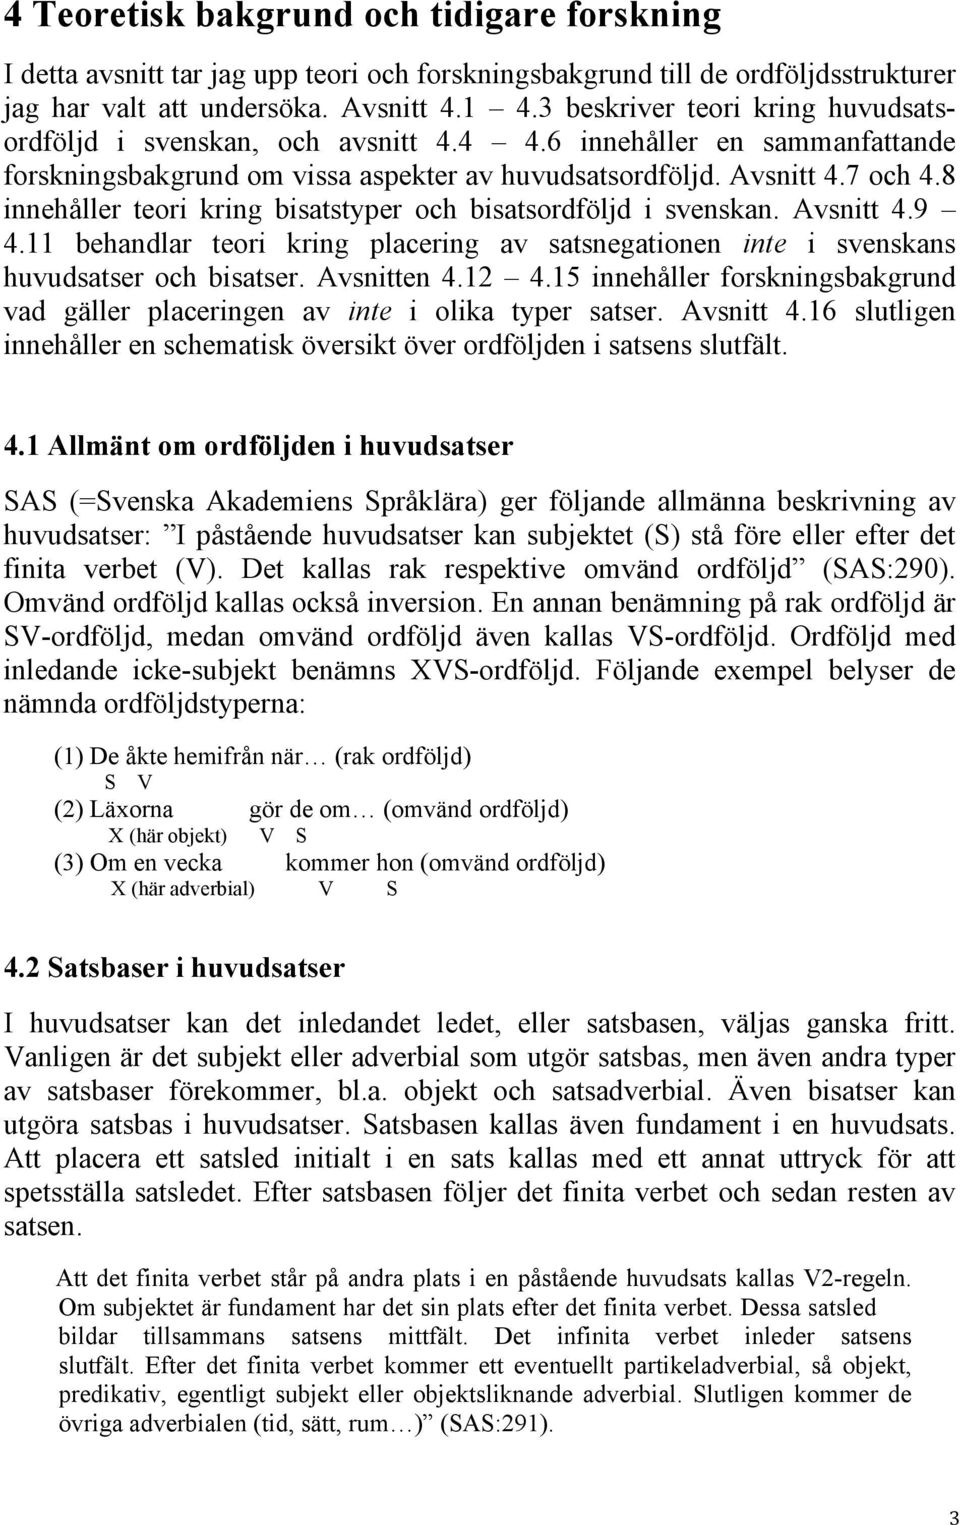 8 innehåller teori kring bisatstyper och bisatsordföljd i svenskan. Avsnitt 4.9 4.11 behandlar teori kring placering av satsnegationen inte i svenskans huvudsatser och bisatser. Avsnitten 4.12 4.